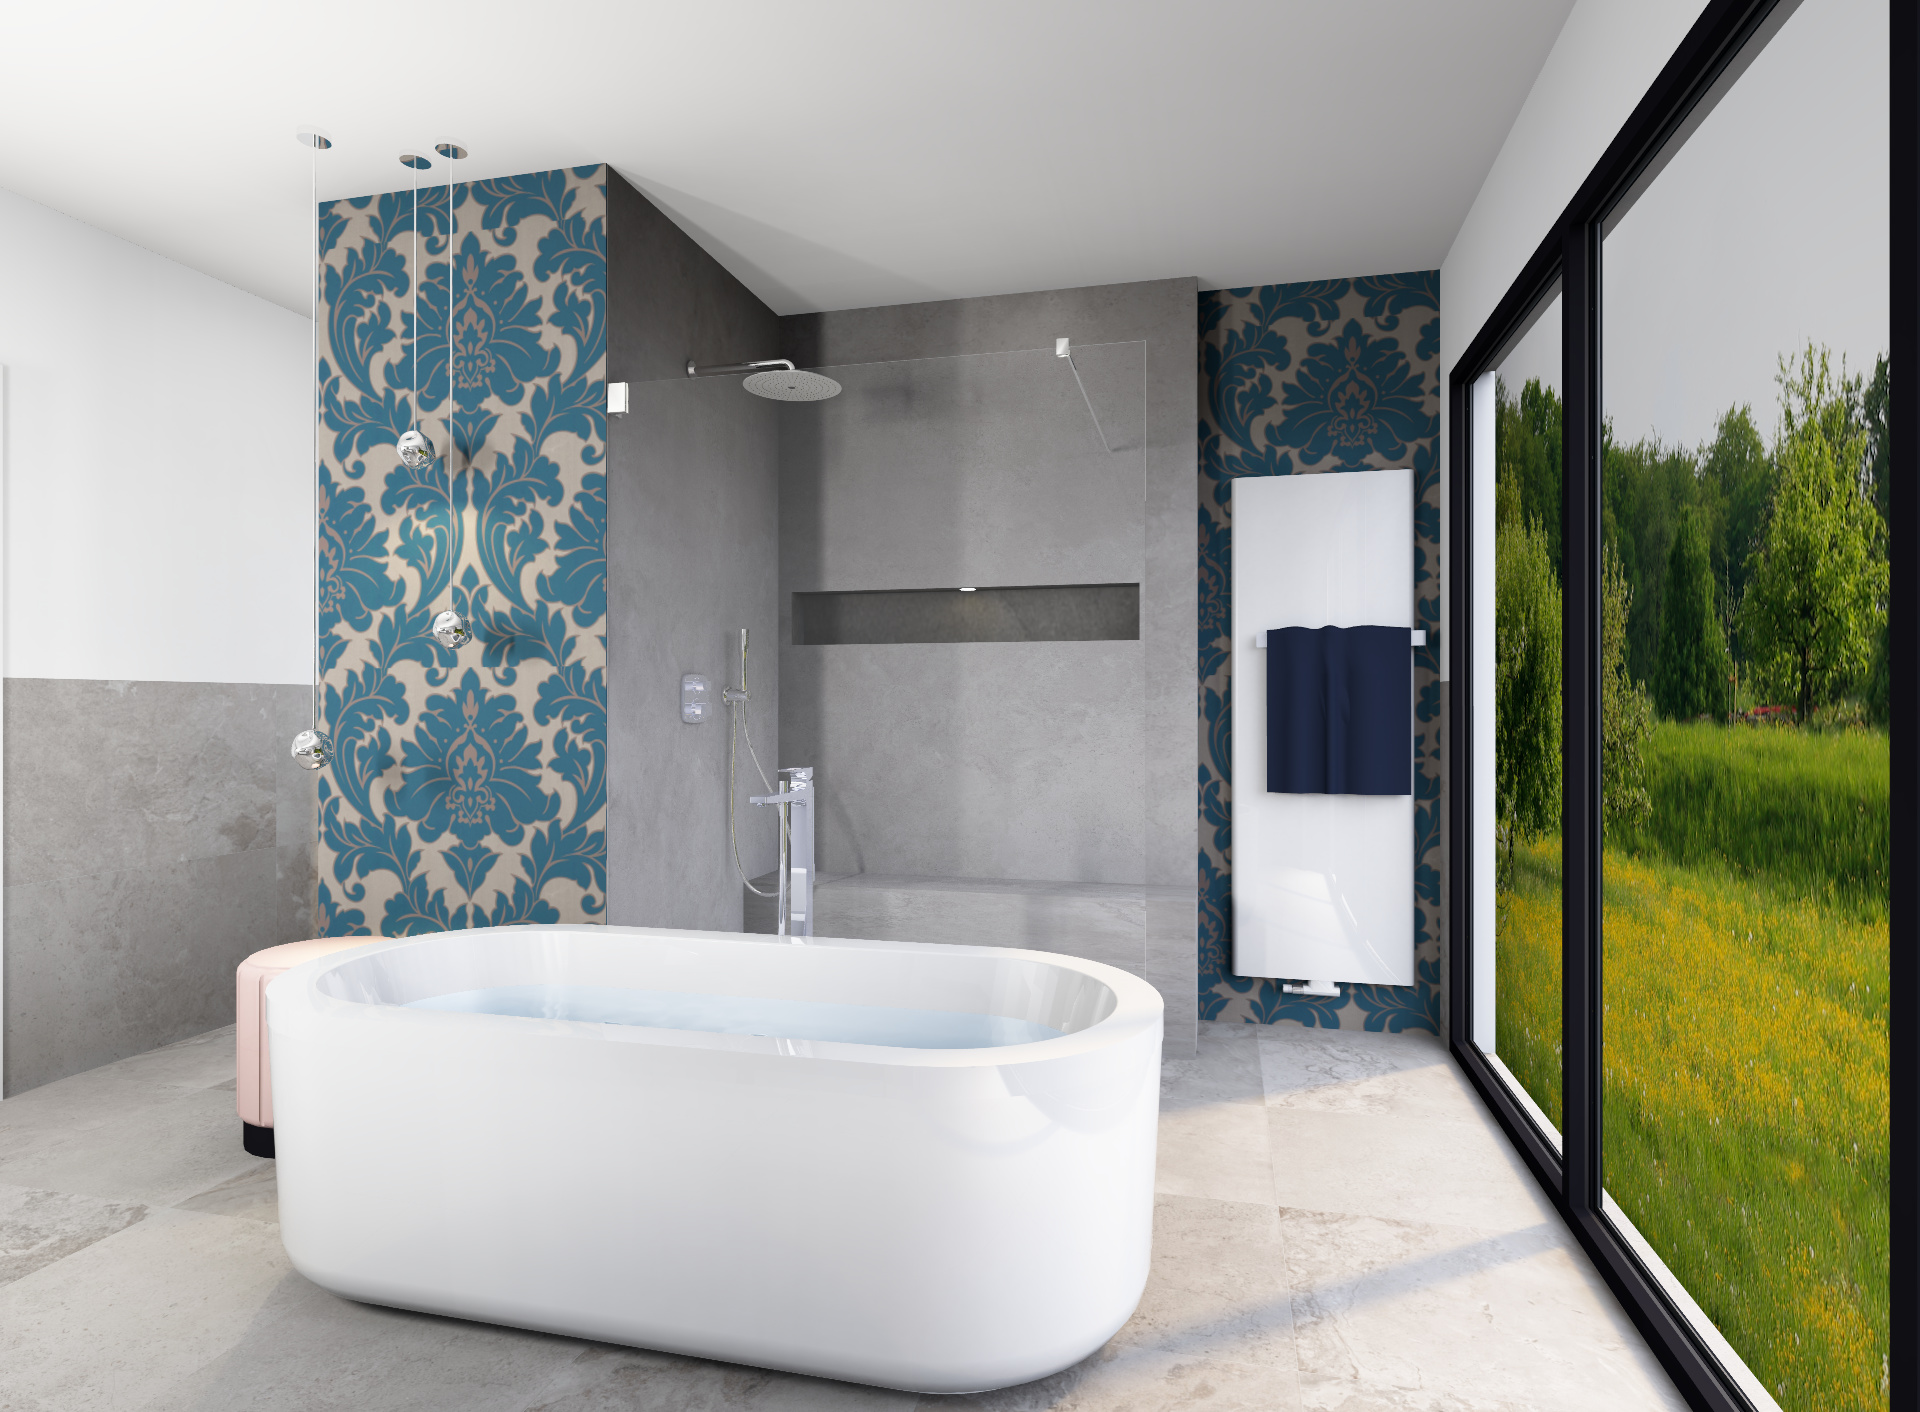 Badezimmer mit Premium Plus Ausstattung wie großer Badewanne und moderner Dusche